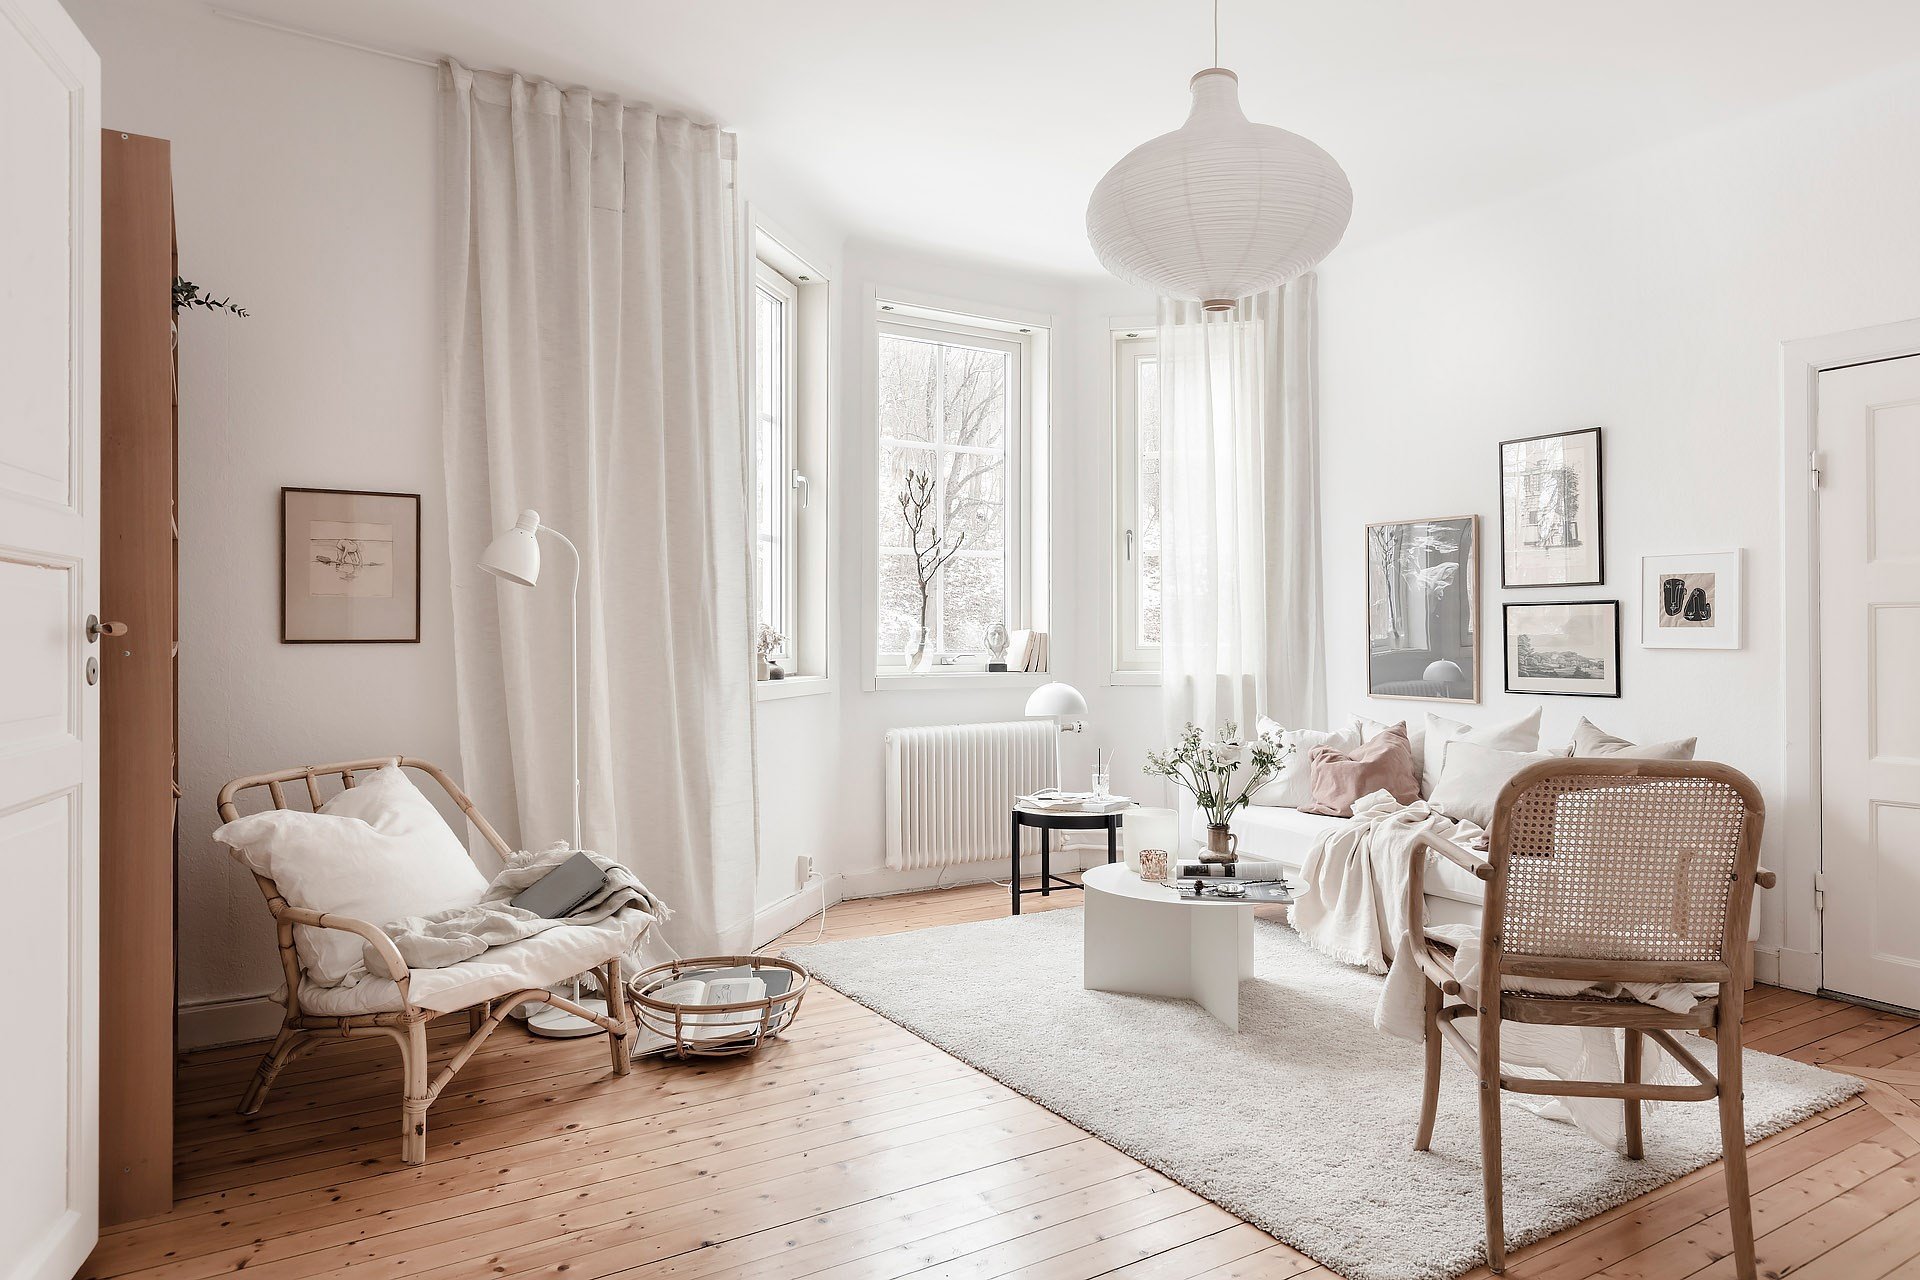 Salón de estilo nórdico lleno de luz gracias a los ventanales y a una paleta de colores en tonos blancos.